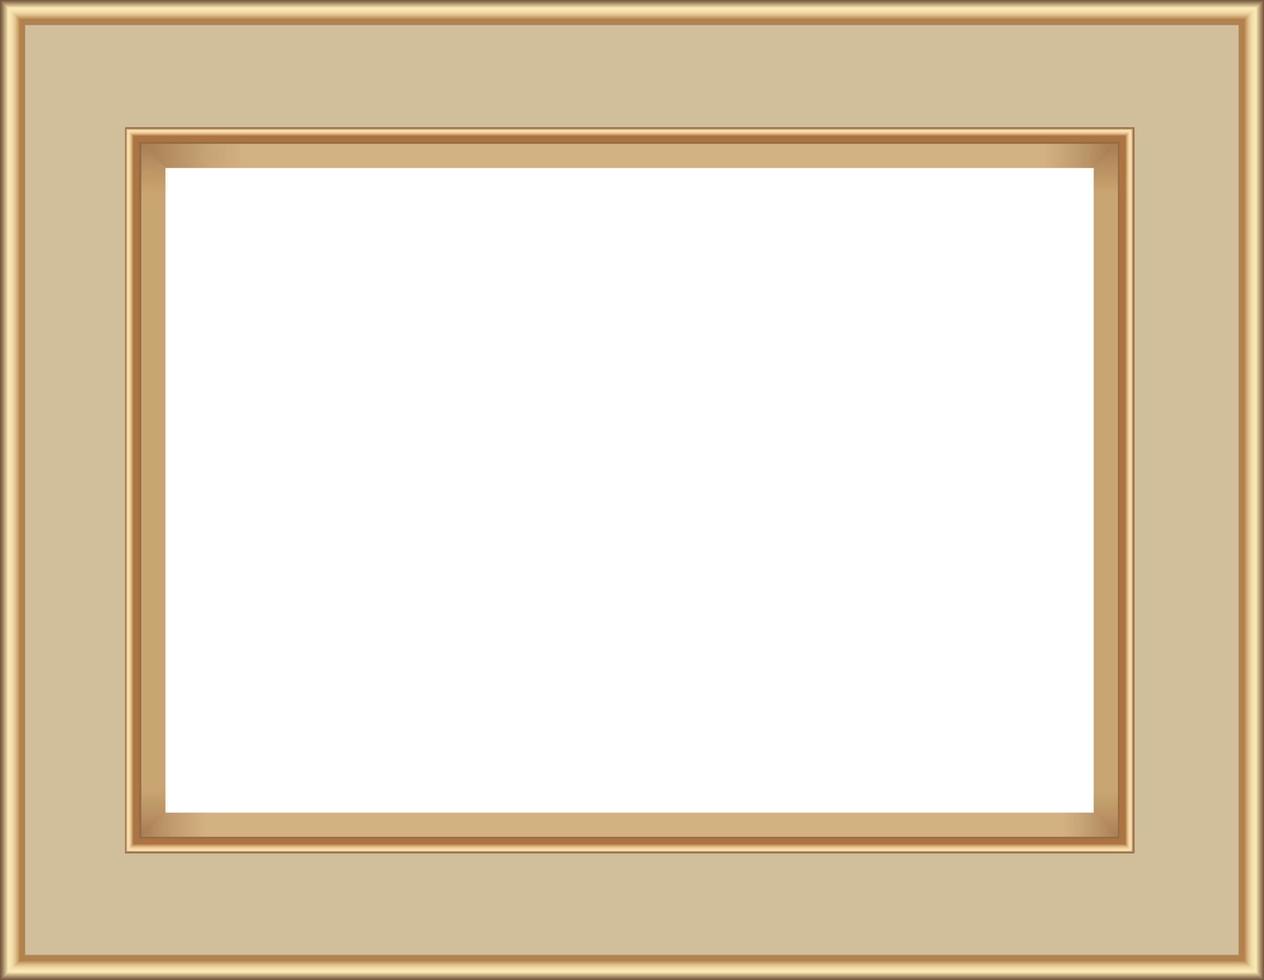 cadre photo isoler sur fond blanc, illustration vectorielle eps10 vecteur